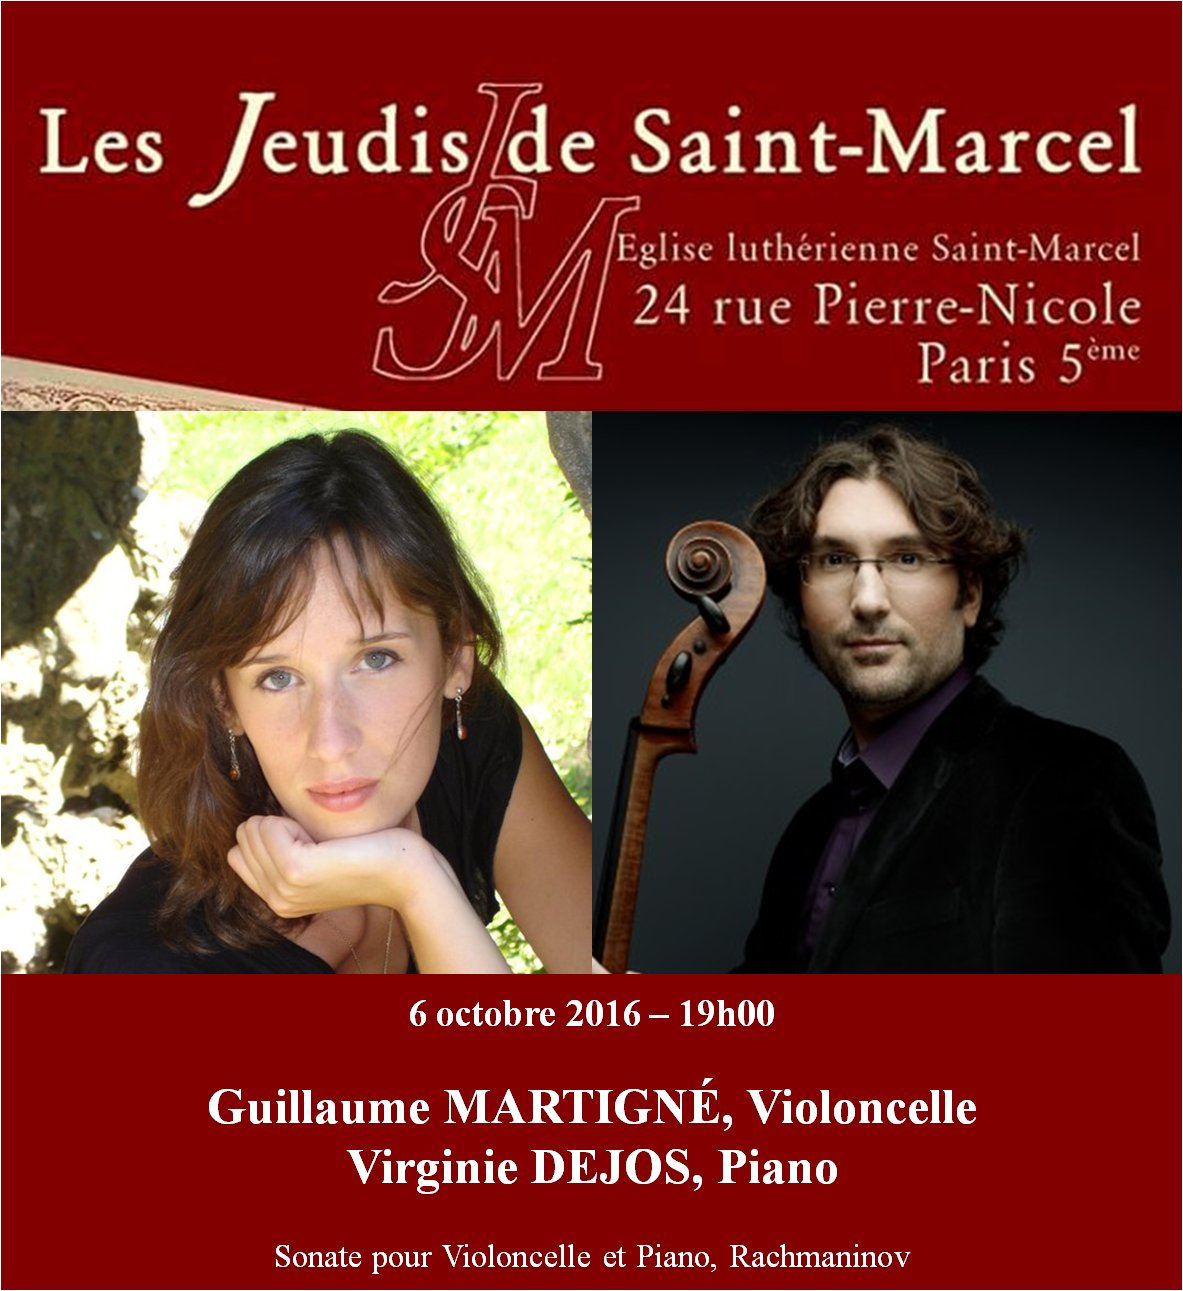 Violoncelliste Guillaume Martigné